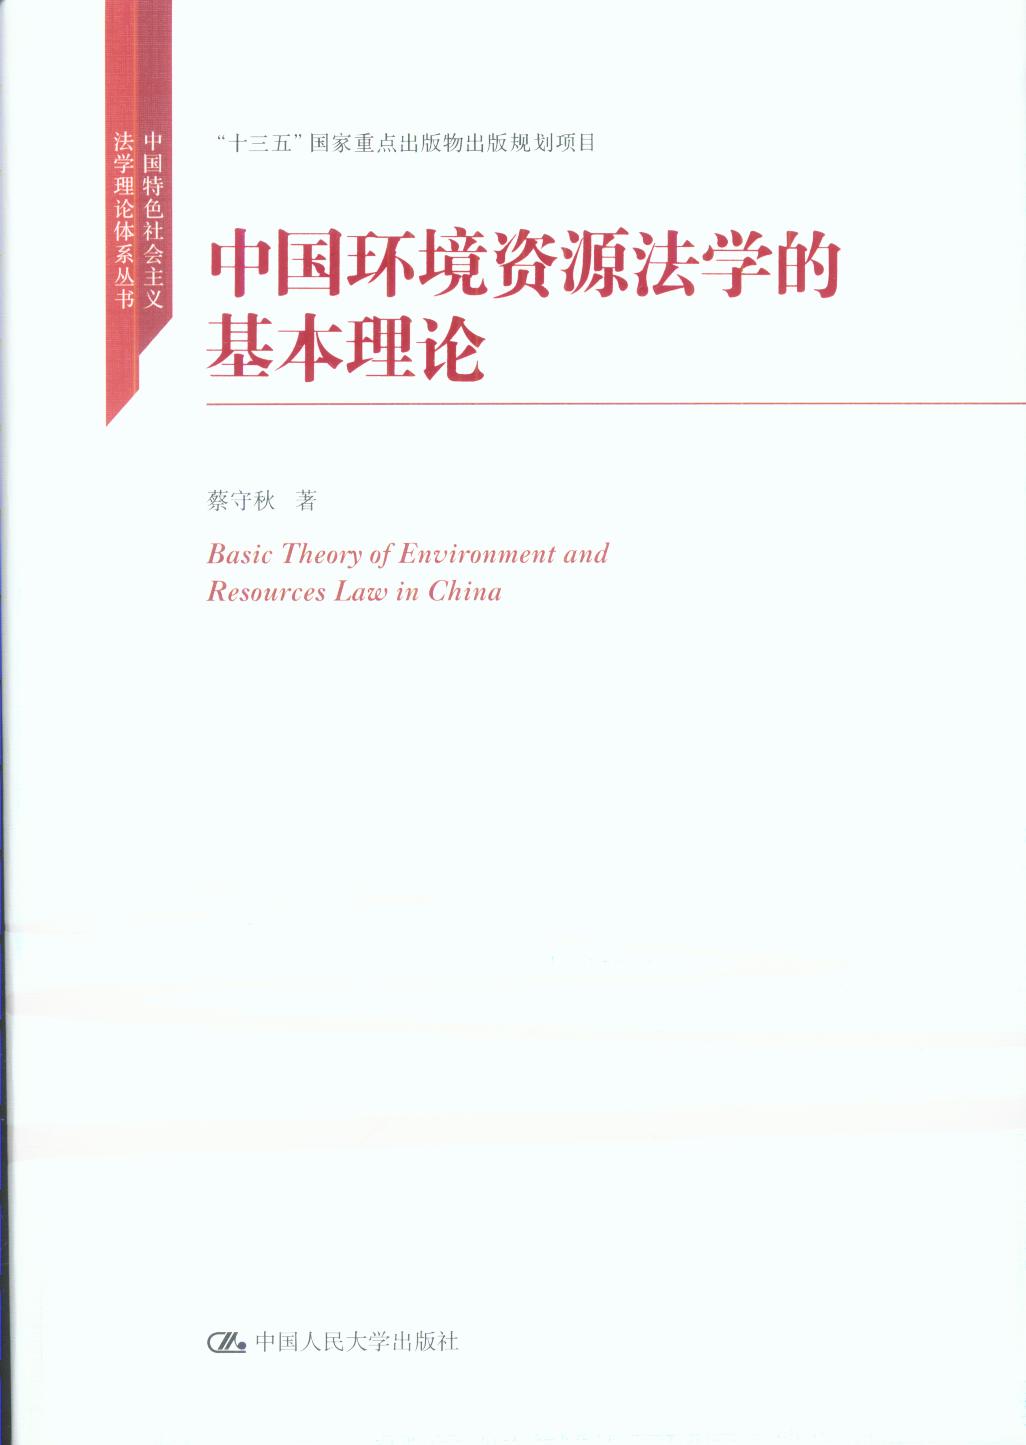 中国环境资源法学的基础理论